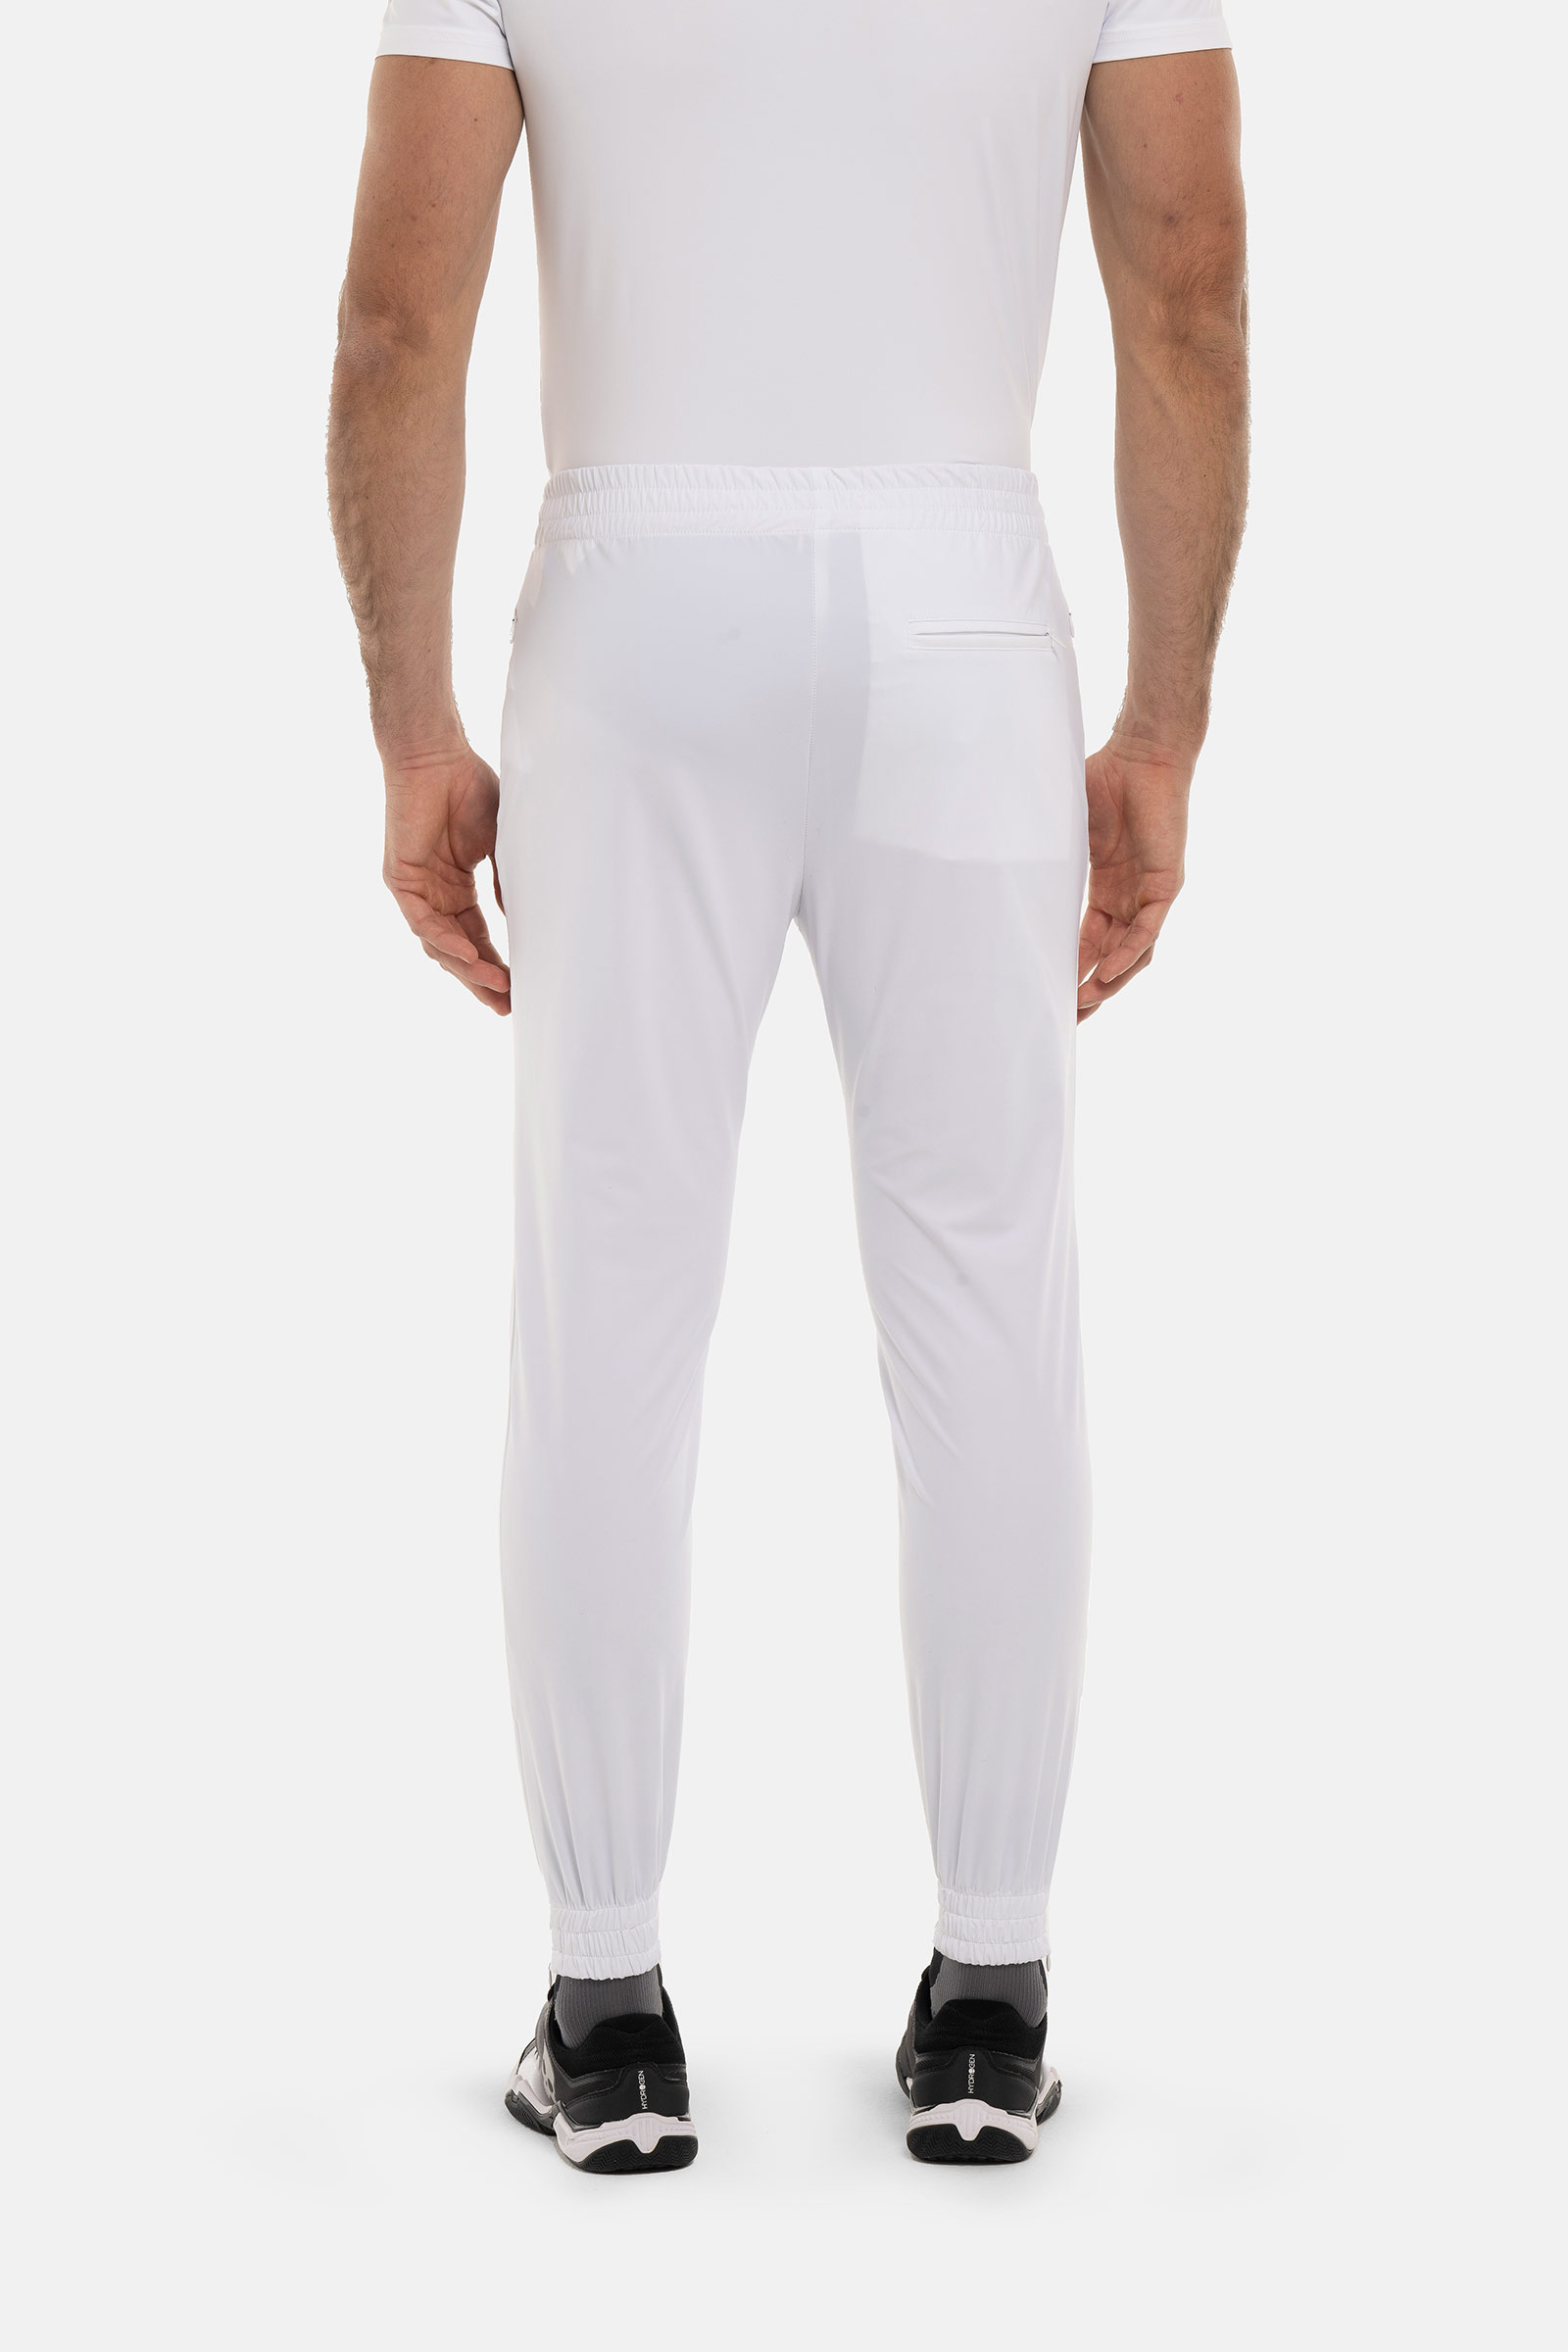 TECH PANTS SKULL - WHITE - Abbigliamento sportivo | Hydrogen